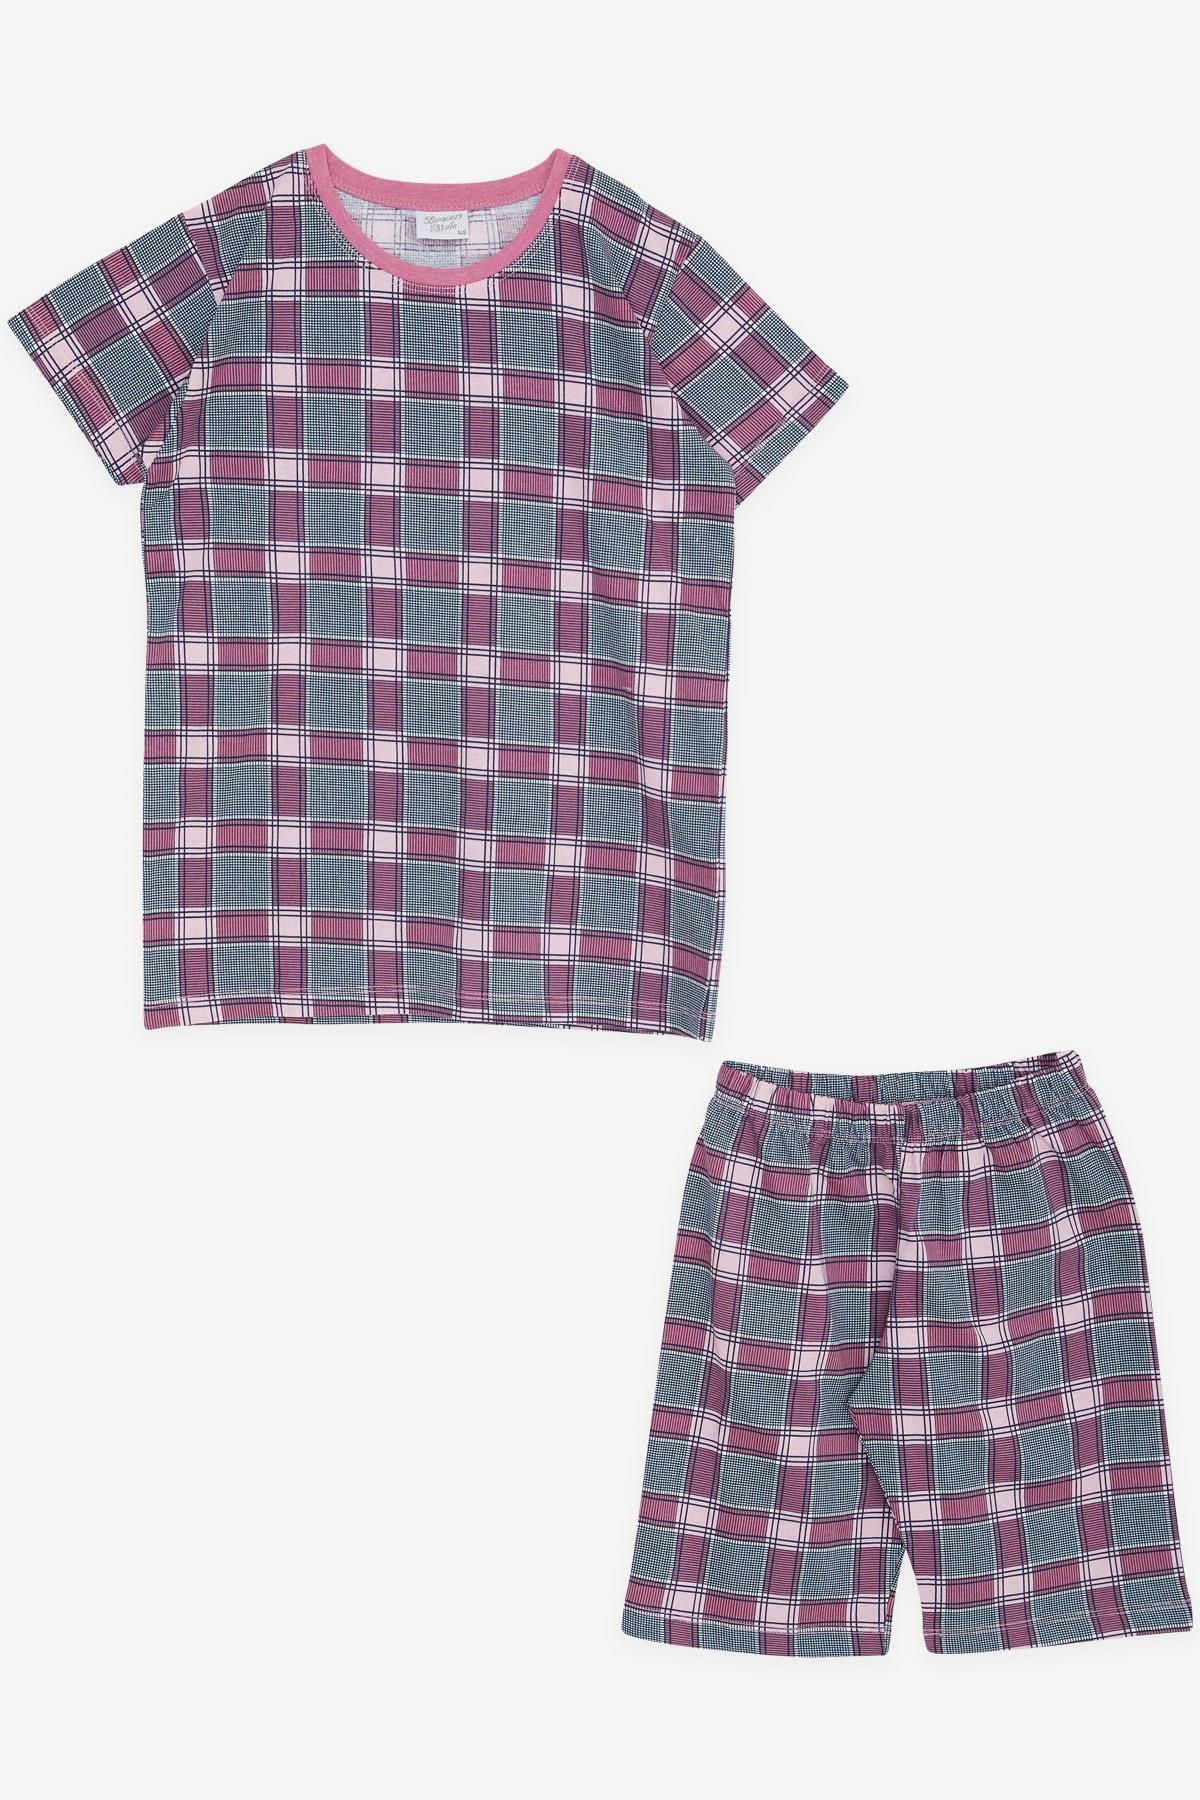 Breeze Kız Çocuk Şortlu Pijama Takımı Ekose Desenli 10-14 Yaş, Karışık Renk